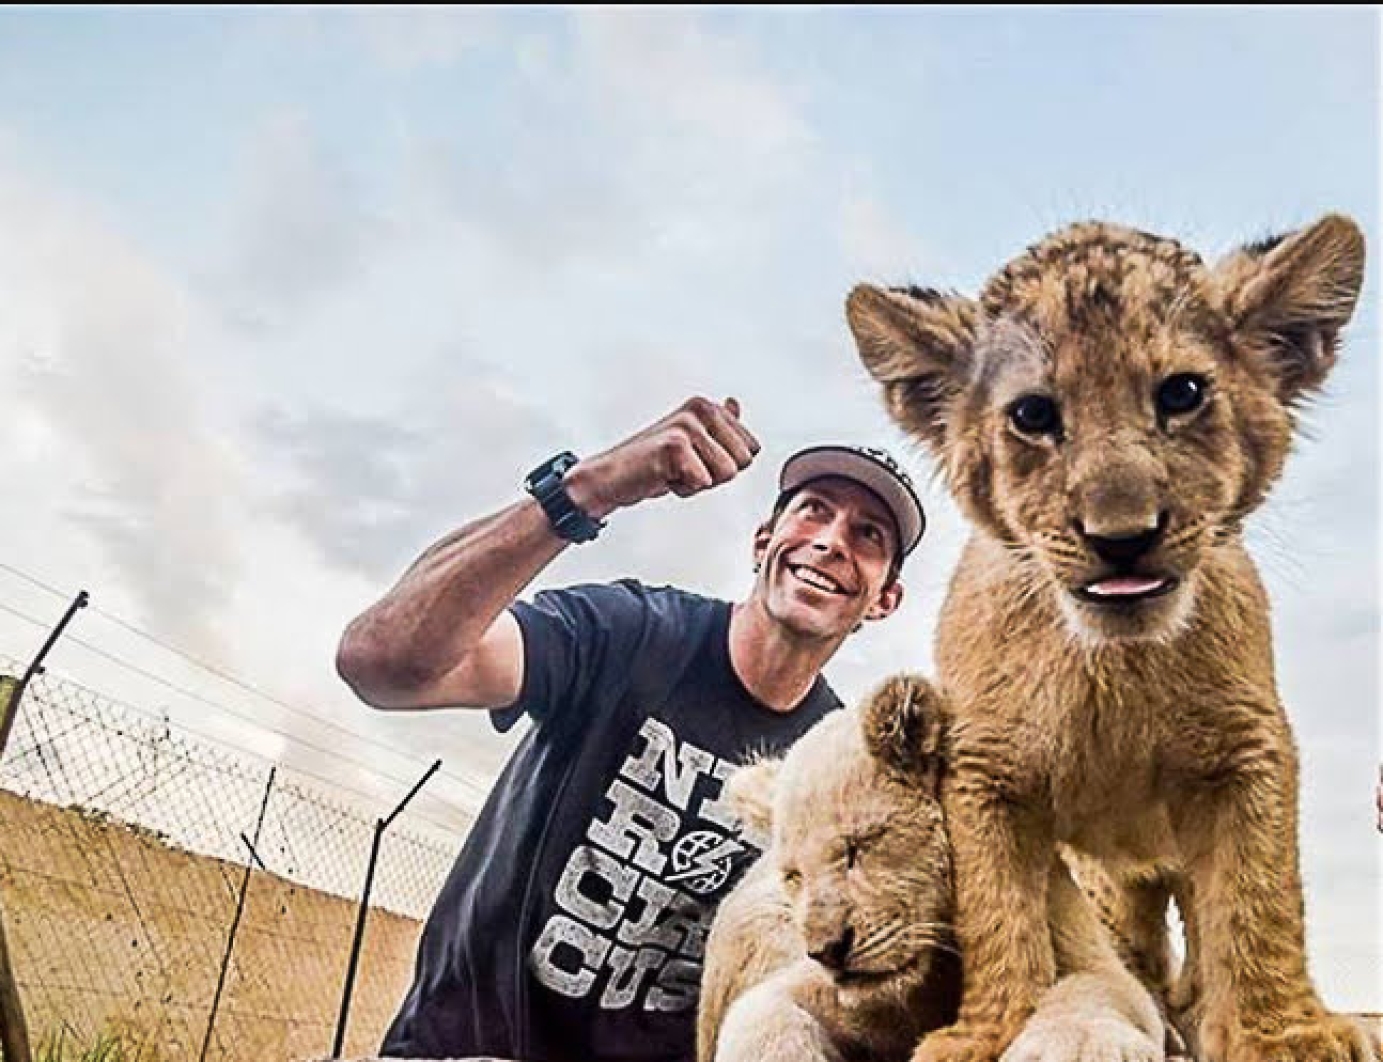 Nitro Circus Travis Pastrana at Lion Park in SA